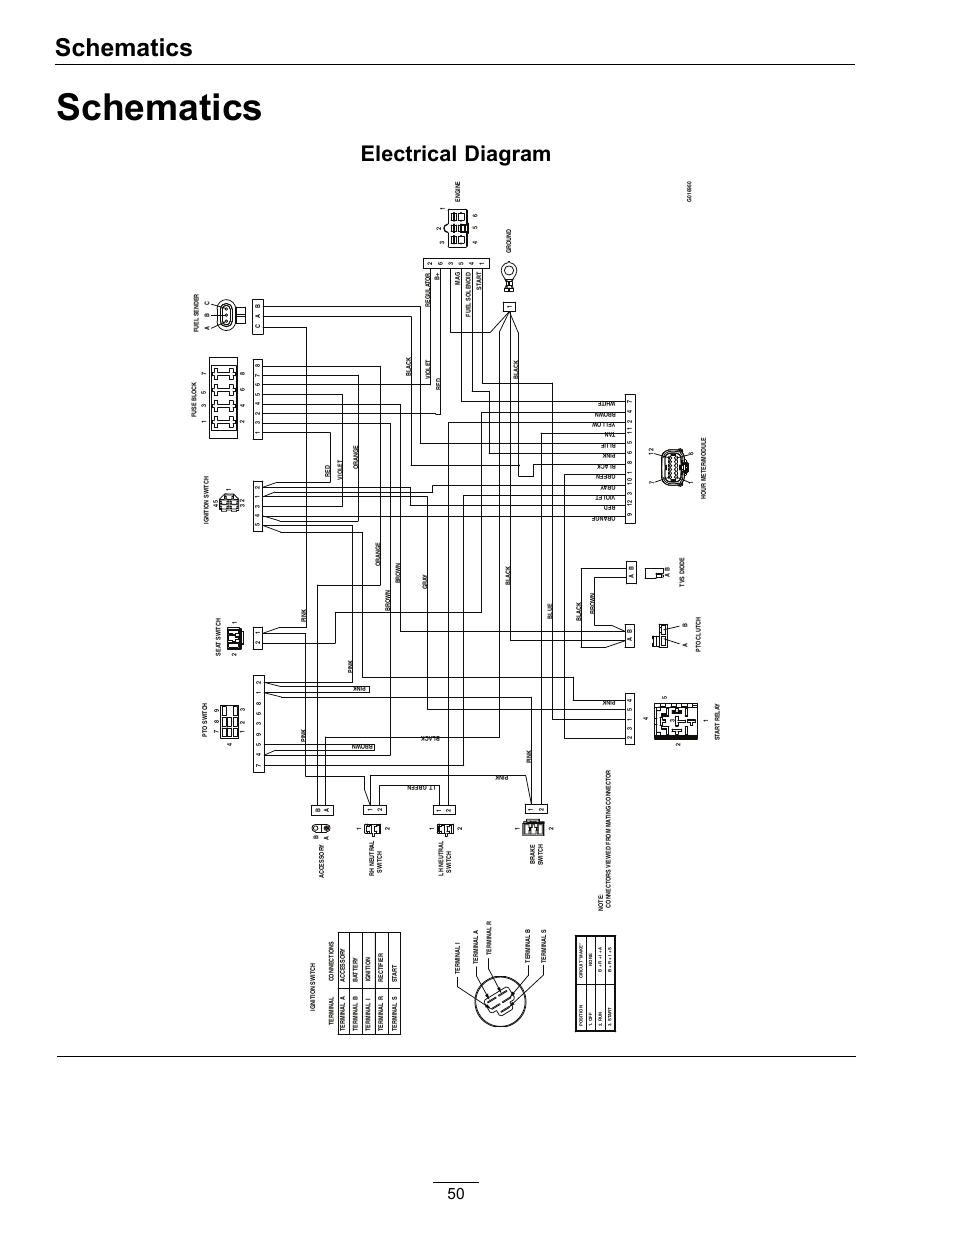 bri mar trailer wiring diagram